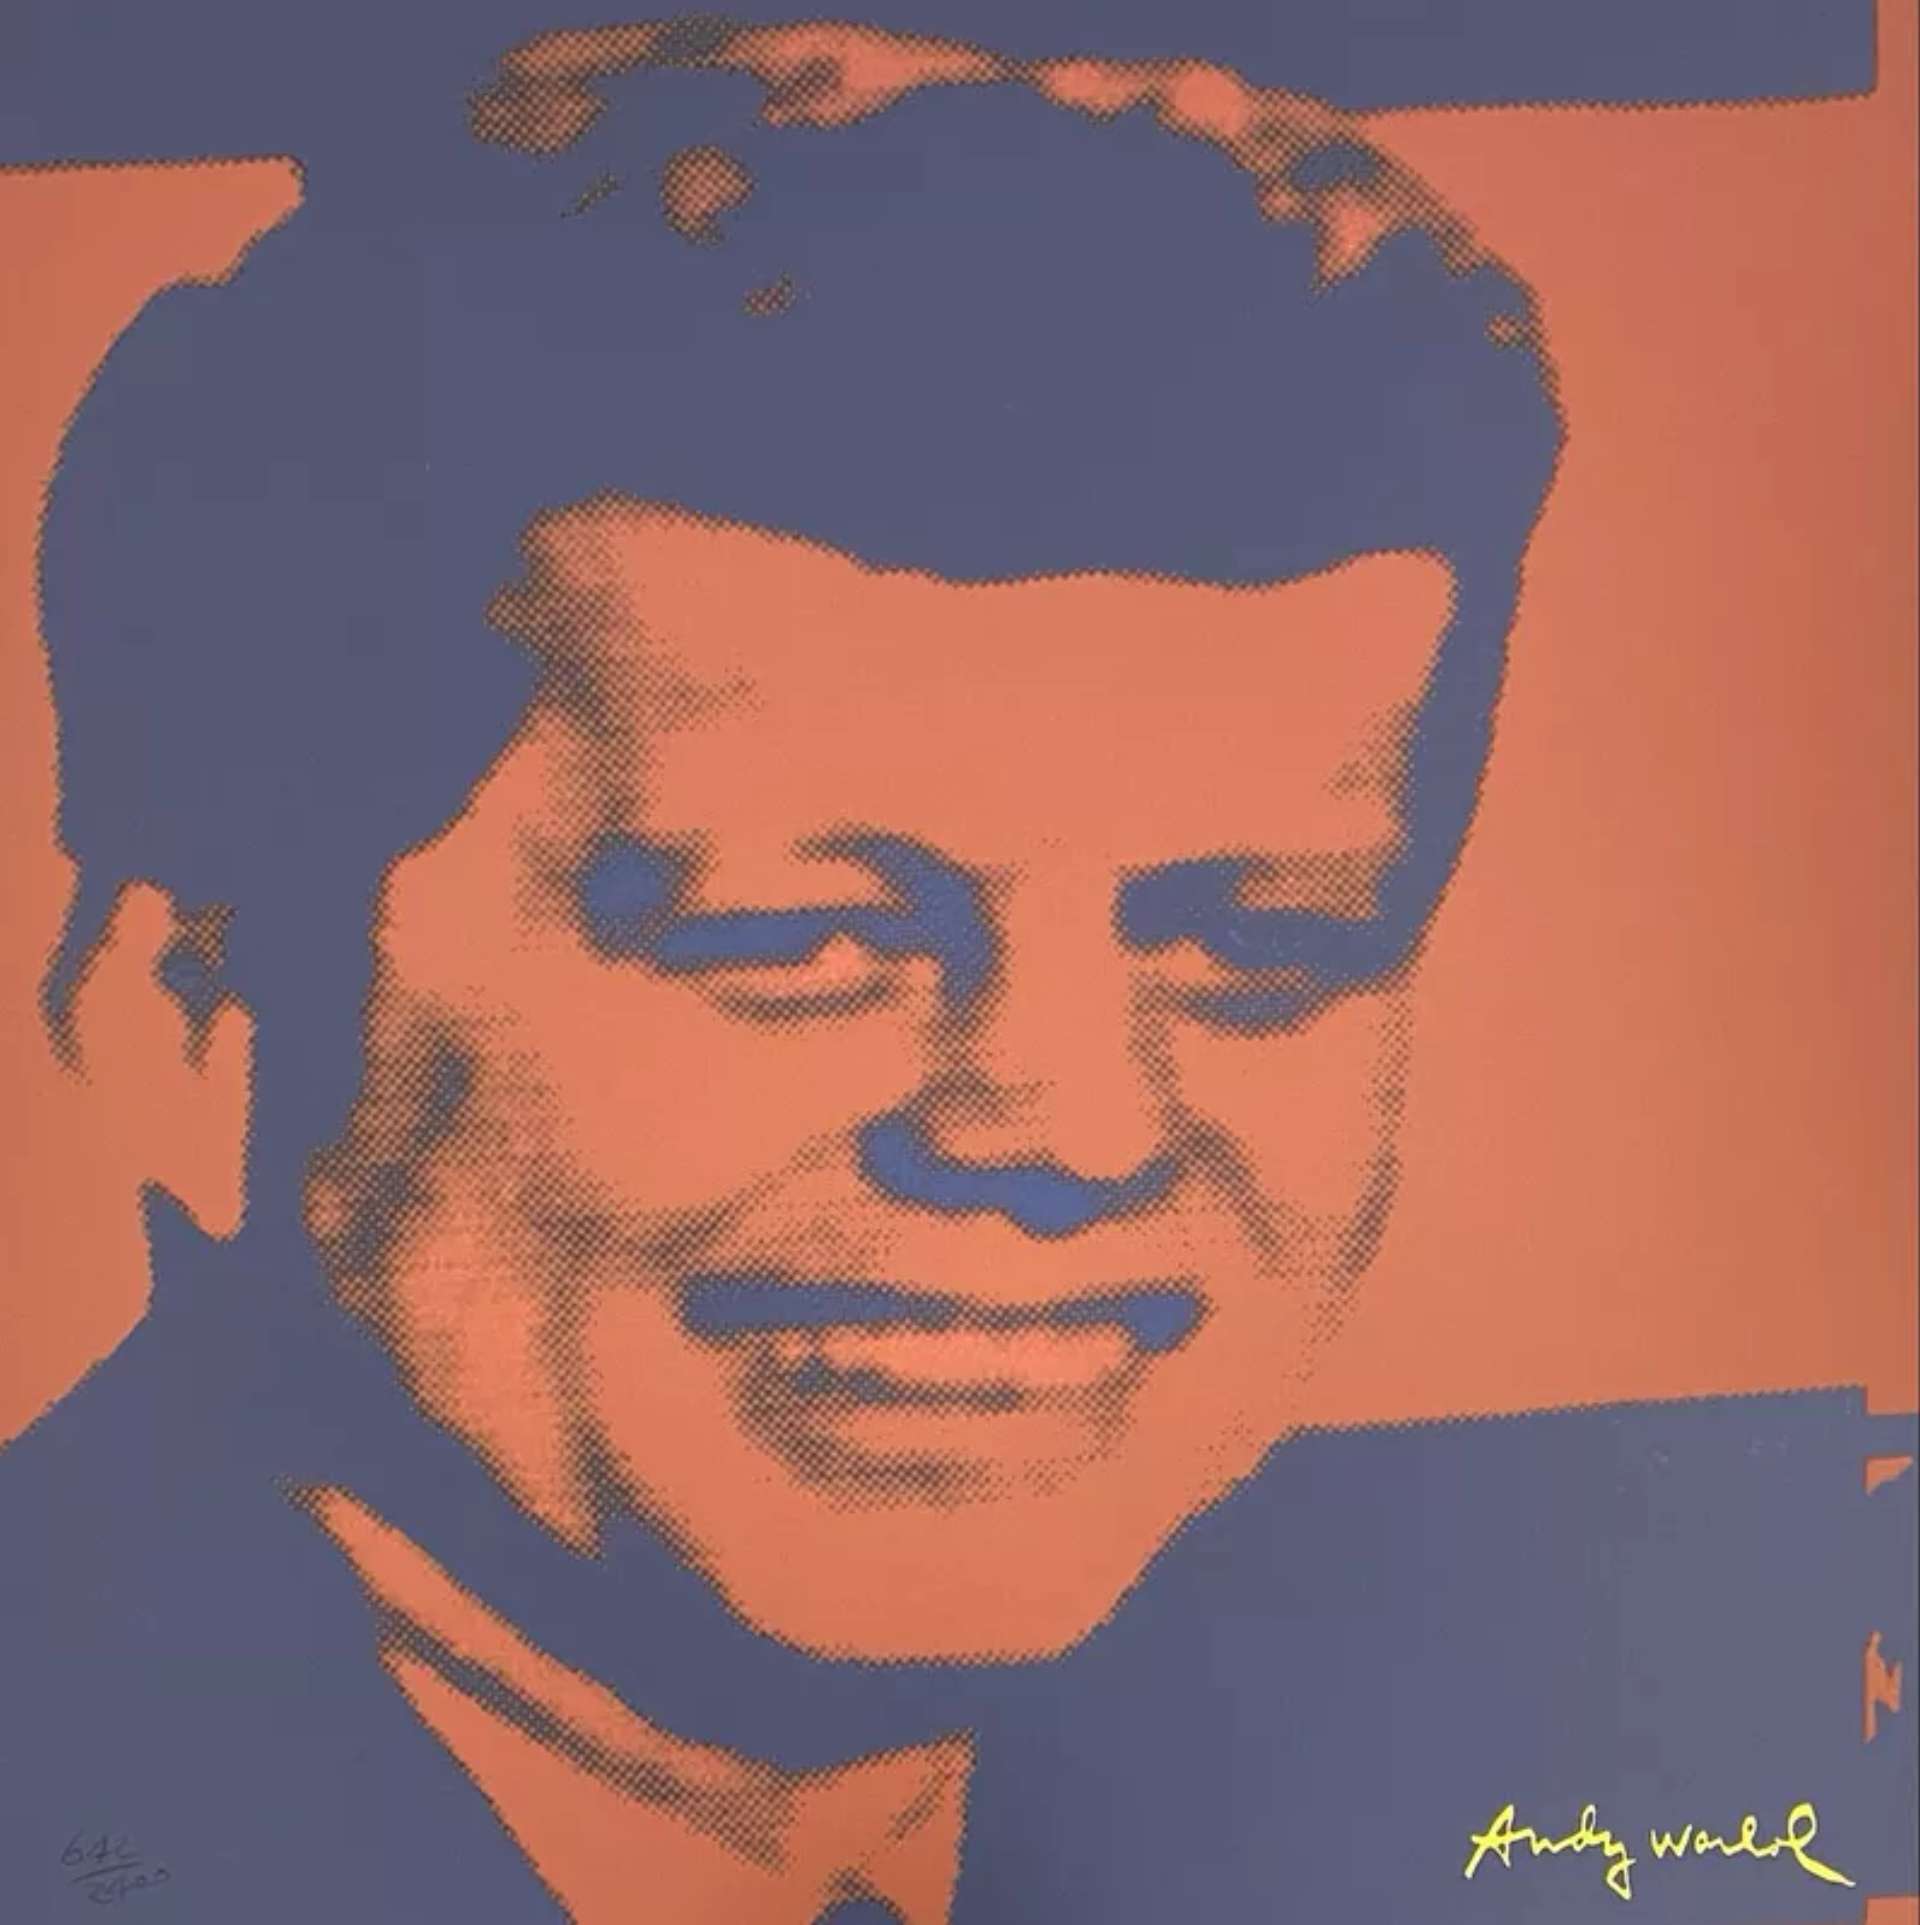 John F. Kennedy by Andy Warhol